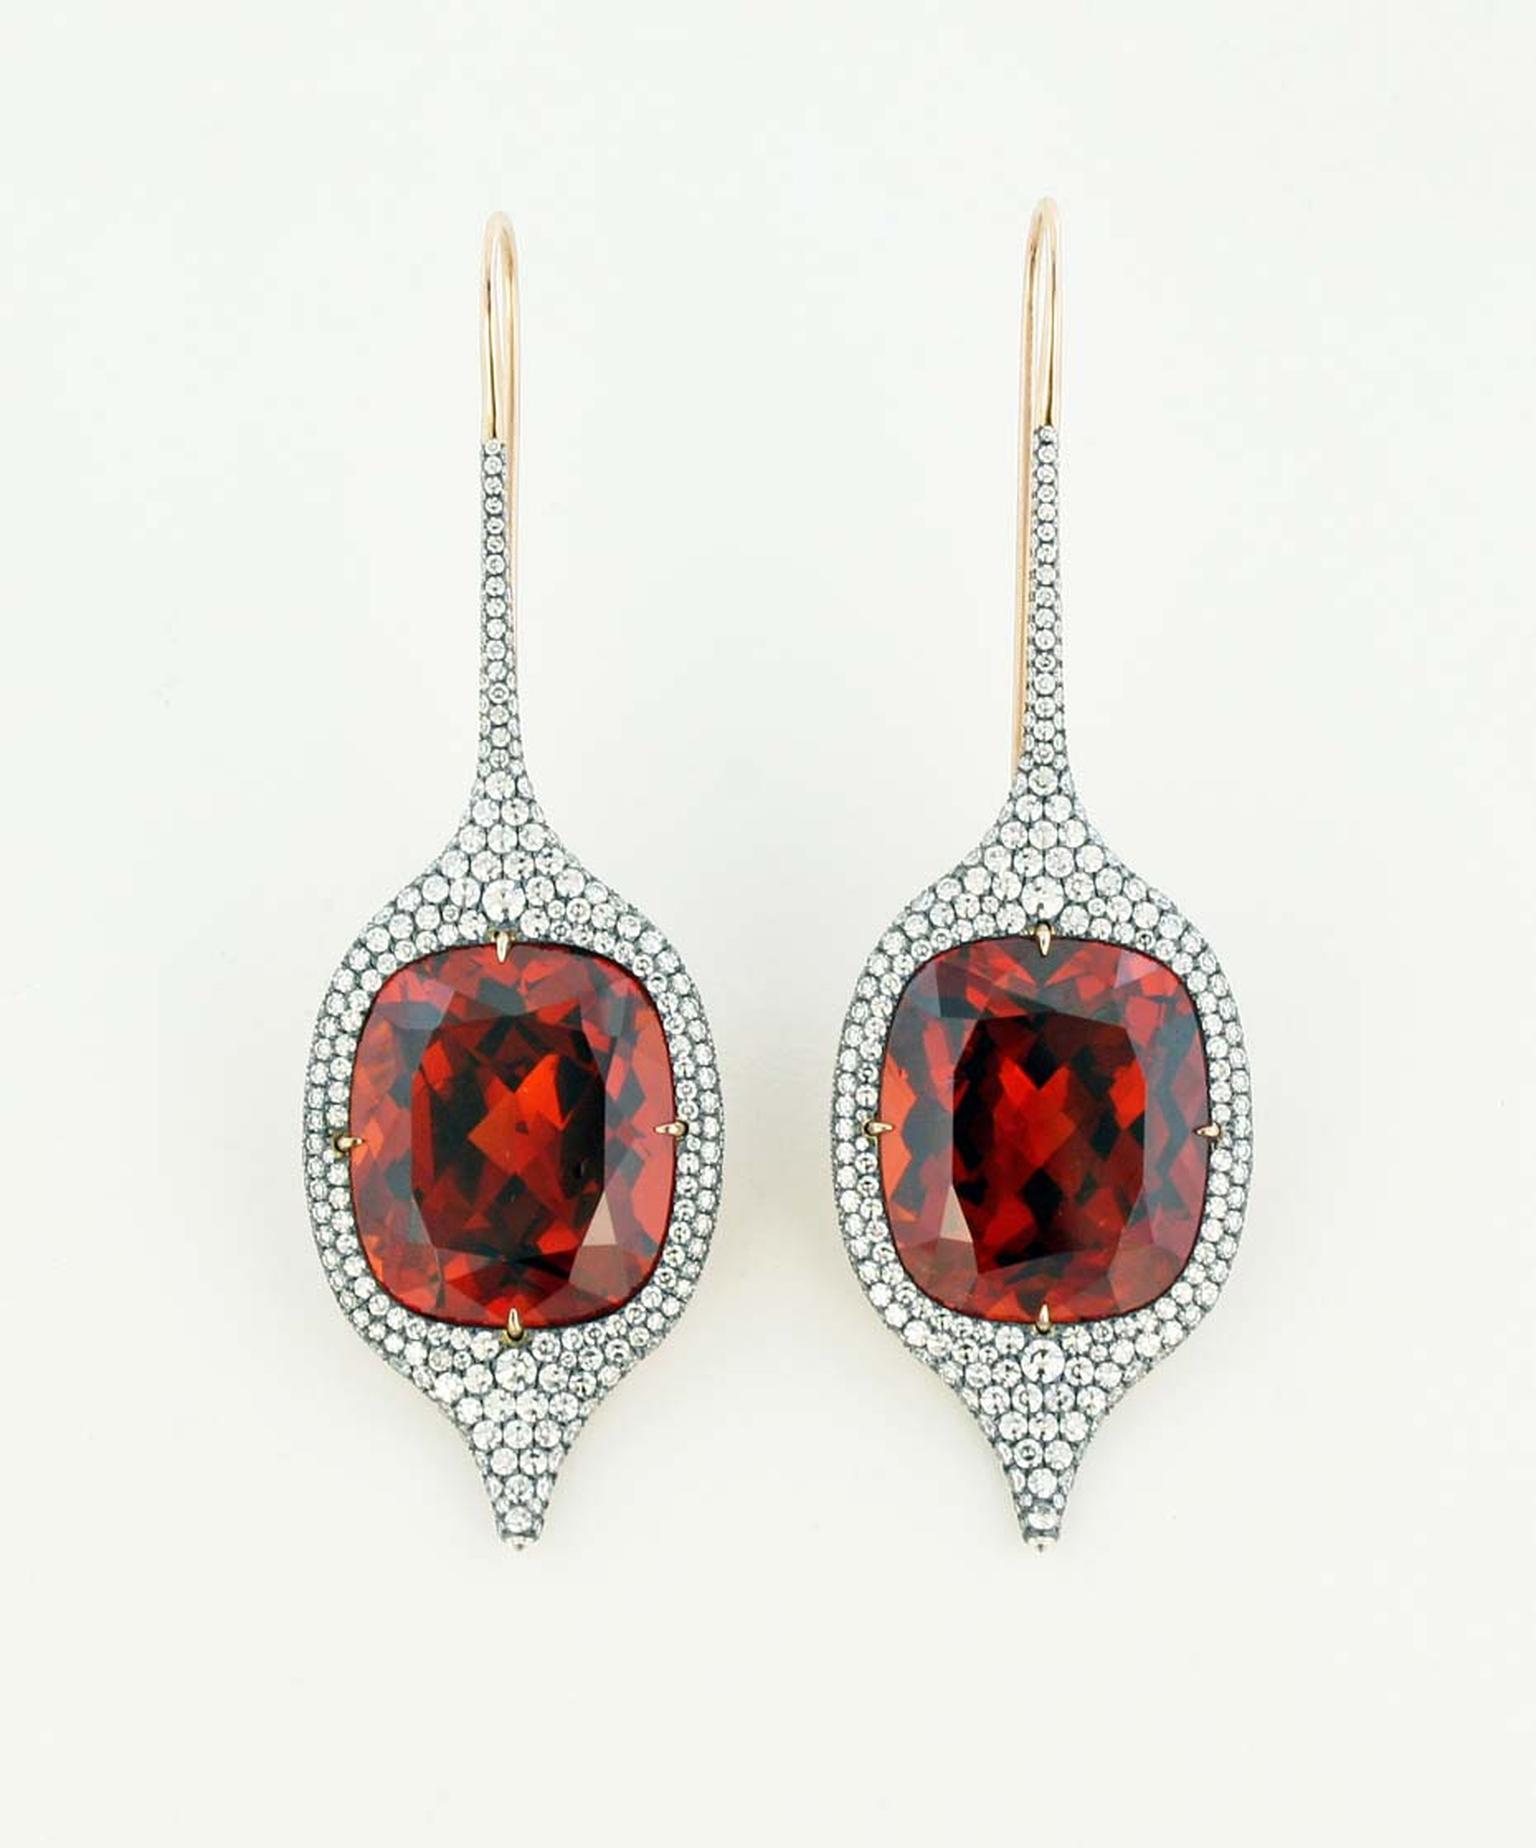 James de Givenchy Taffin mandarin garnet, diamond, silver and rose gold ear pendants.